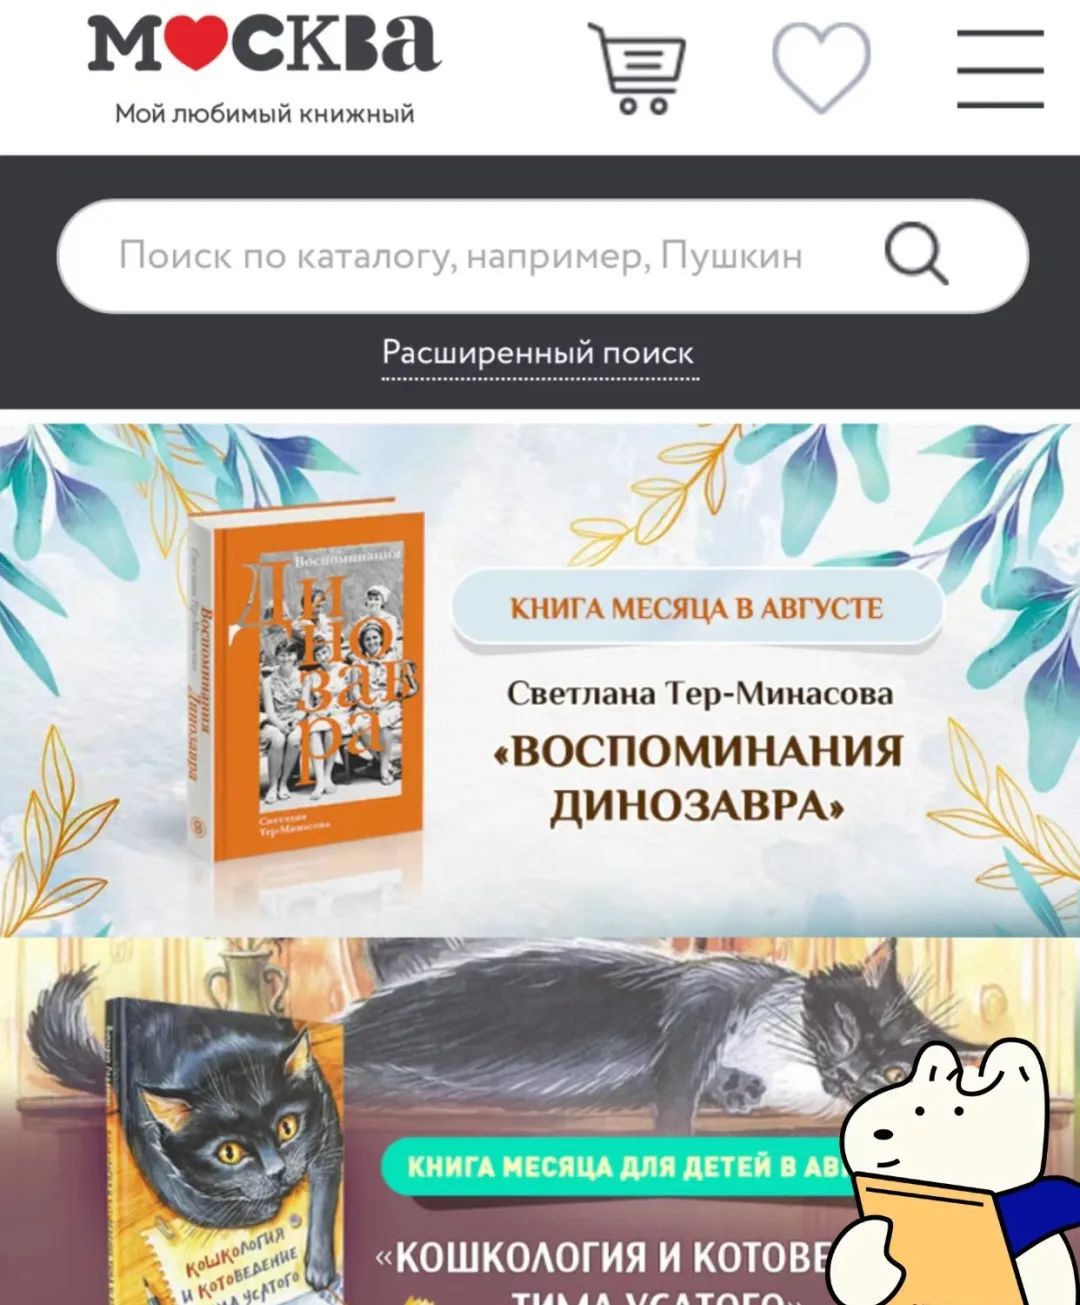 “ 俄罗斯留学实用干货分享 | 怎么线上购买俄语书籍/教材 ”